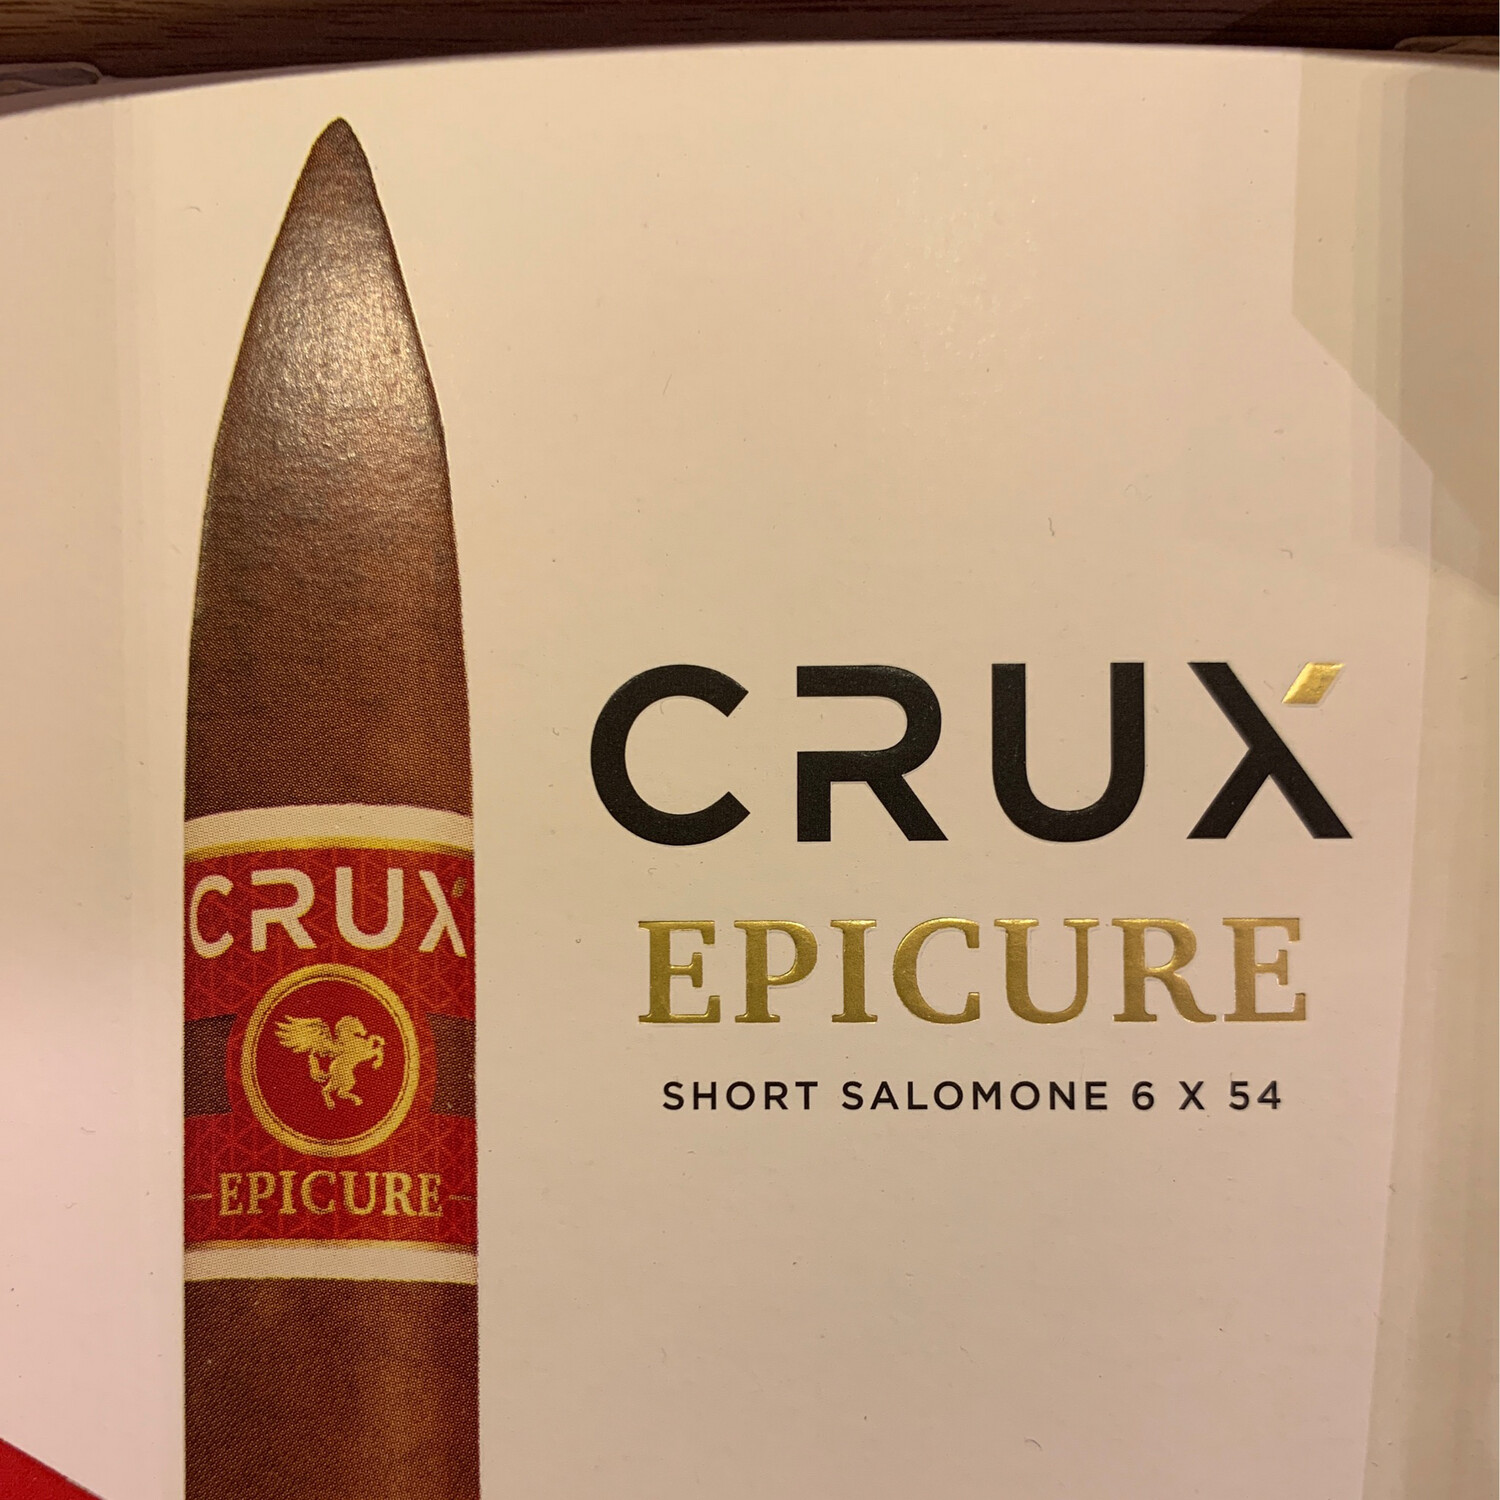 Crux Epicure Short Salomone